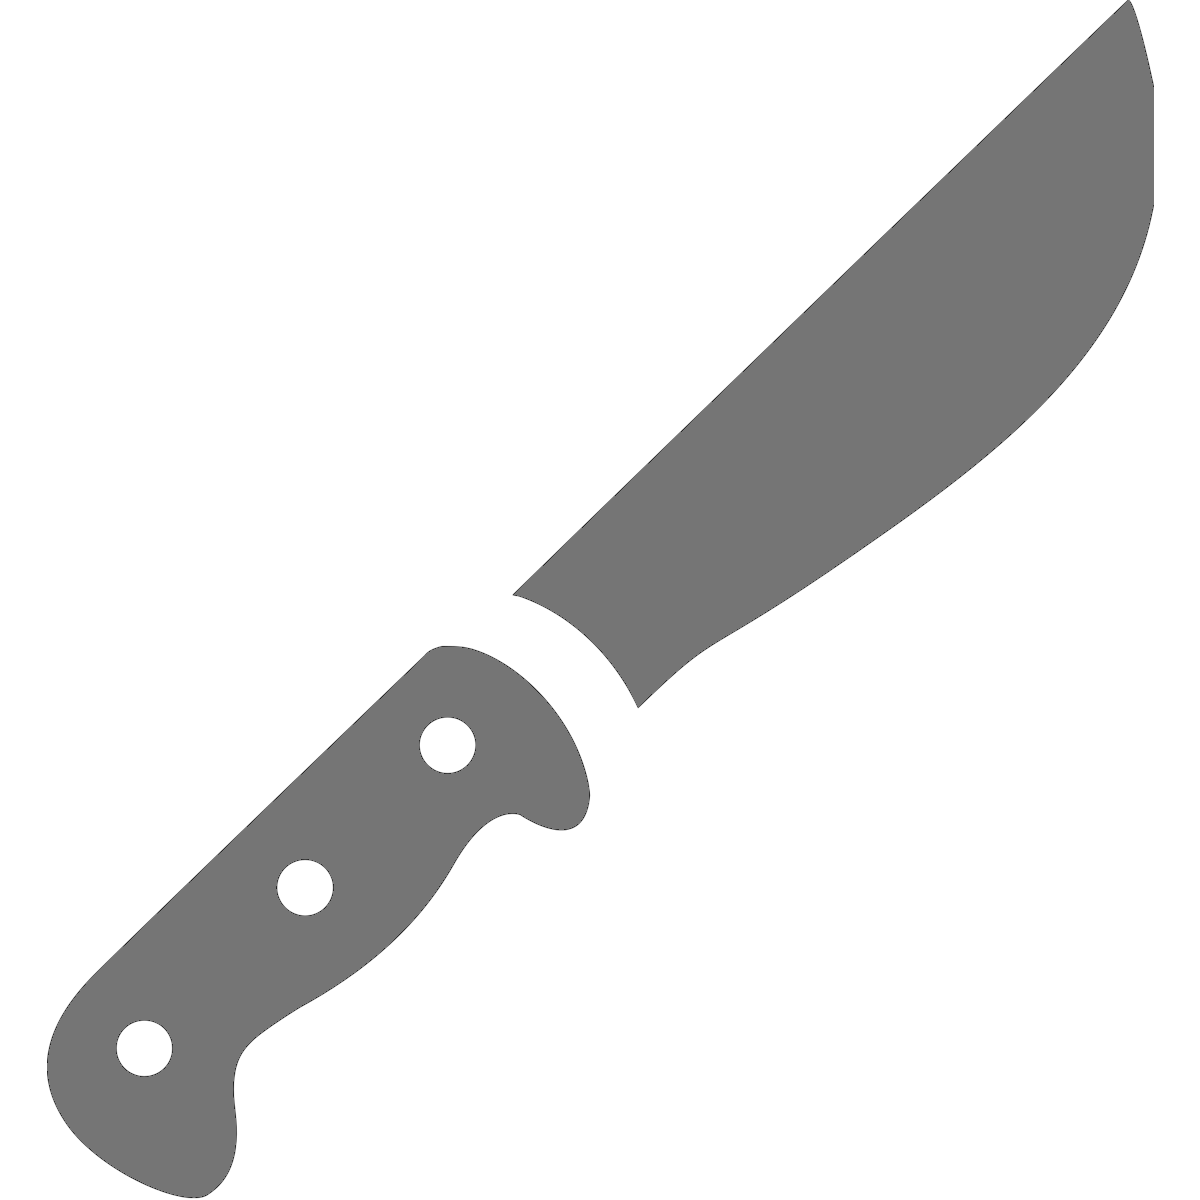 Murder Clipart Black Knife Murder Black Knife Transparent Free For Download On Webstockreview 2020 - roblox knife transparent background